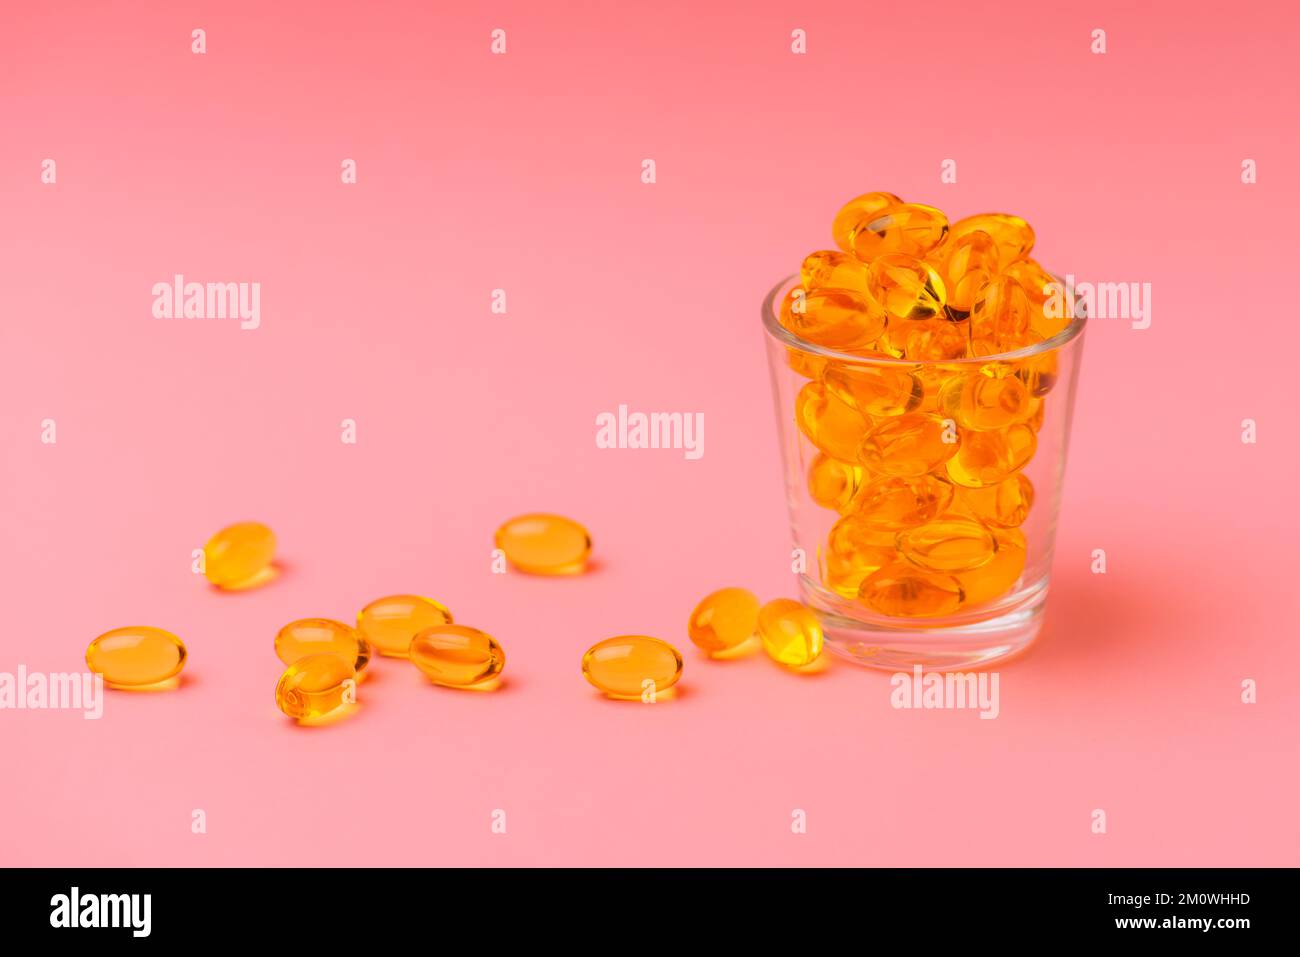 Nahaufnahme von Omega 3 oder Fischölkapseln in einem Glasbecher auf rosa Hintergrund, das Konzept der gesunden Ernährung, Krankheitsprävention und Behandlung Stockfoto